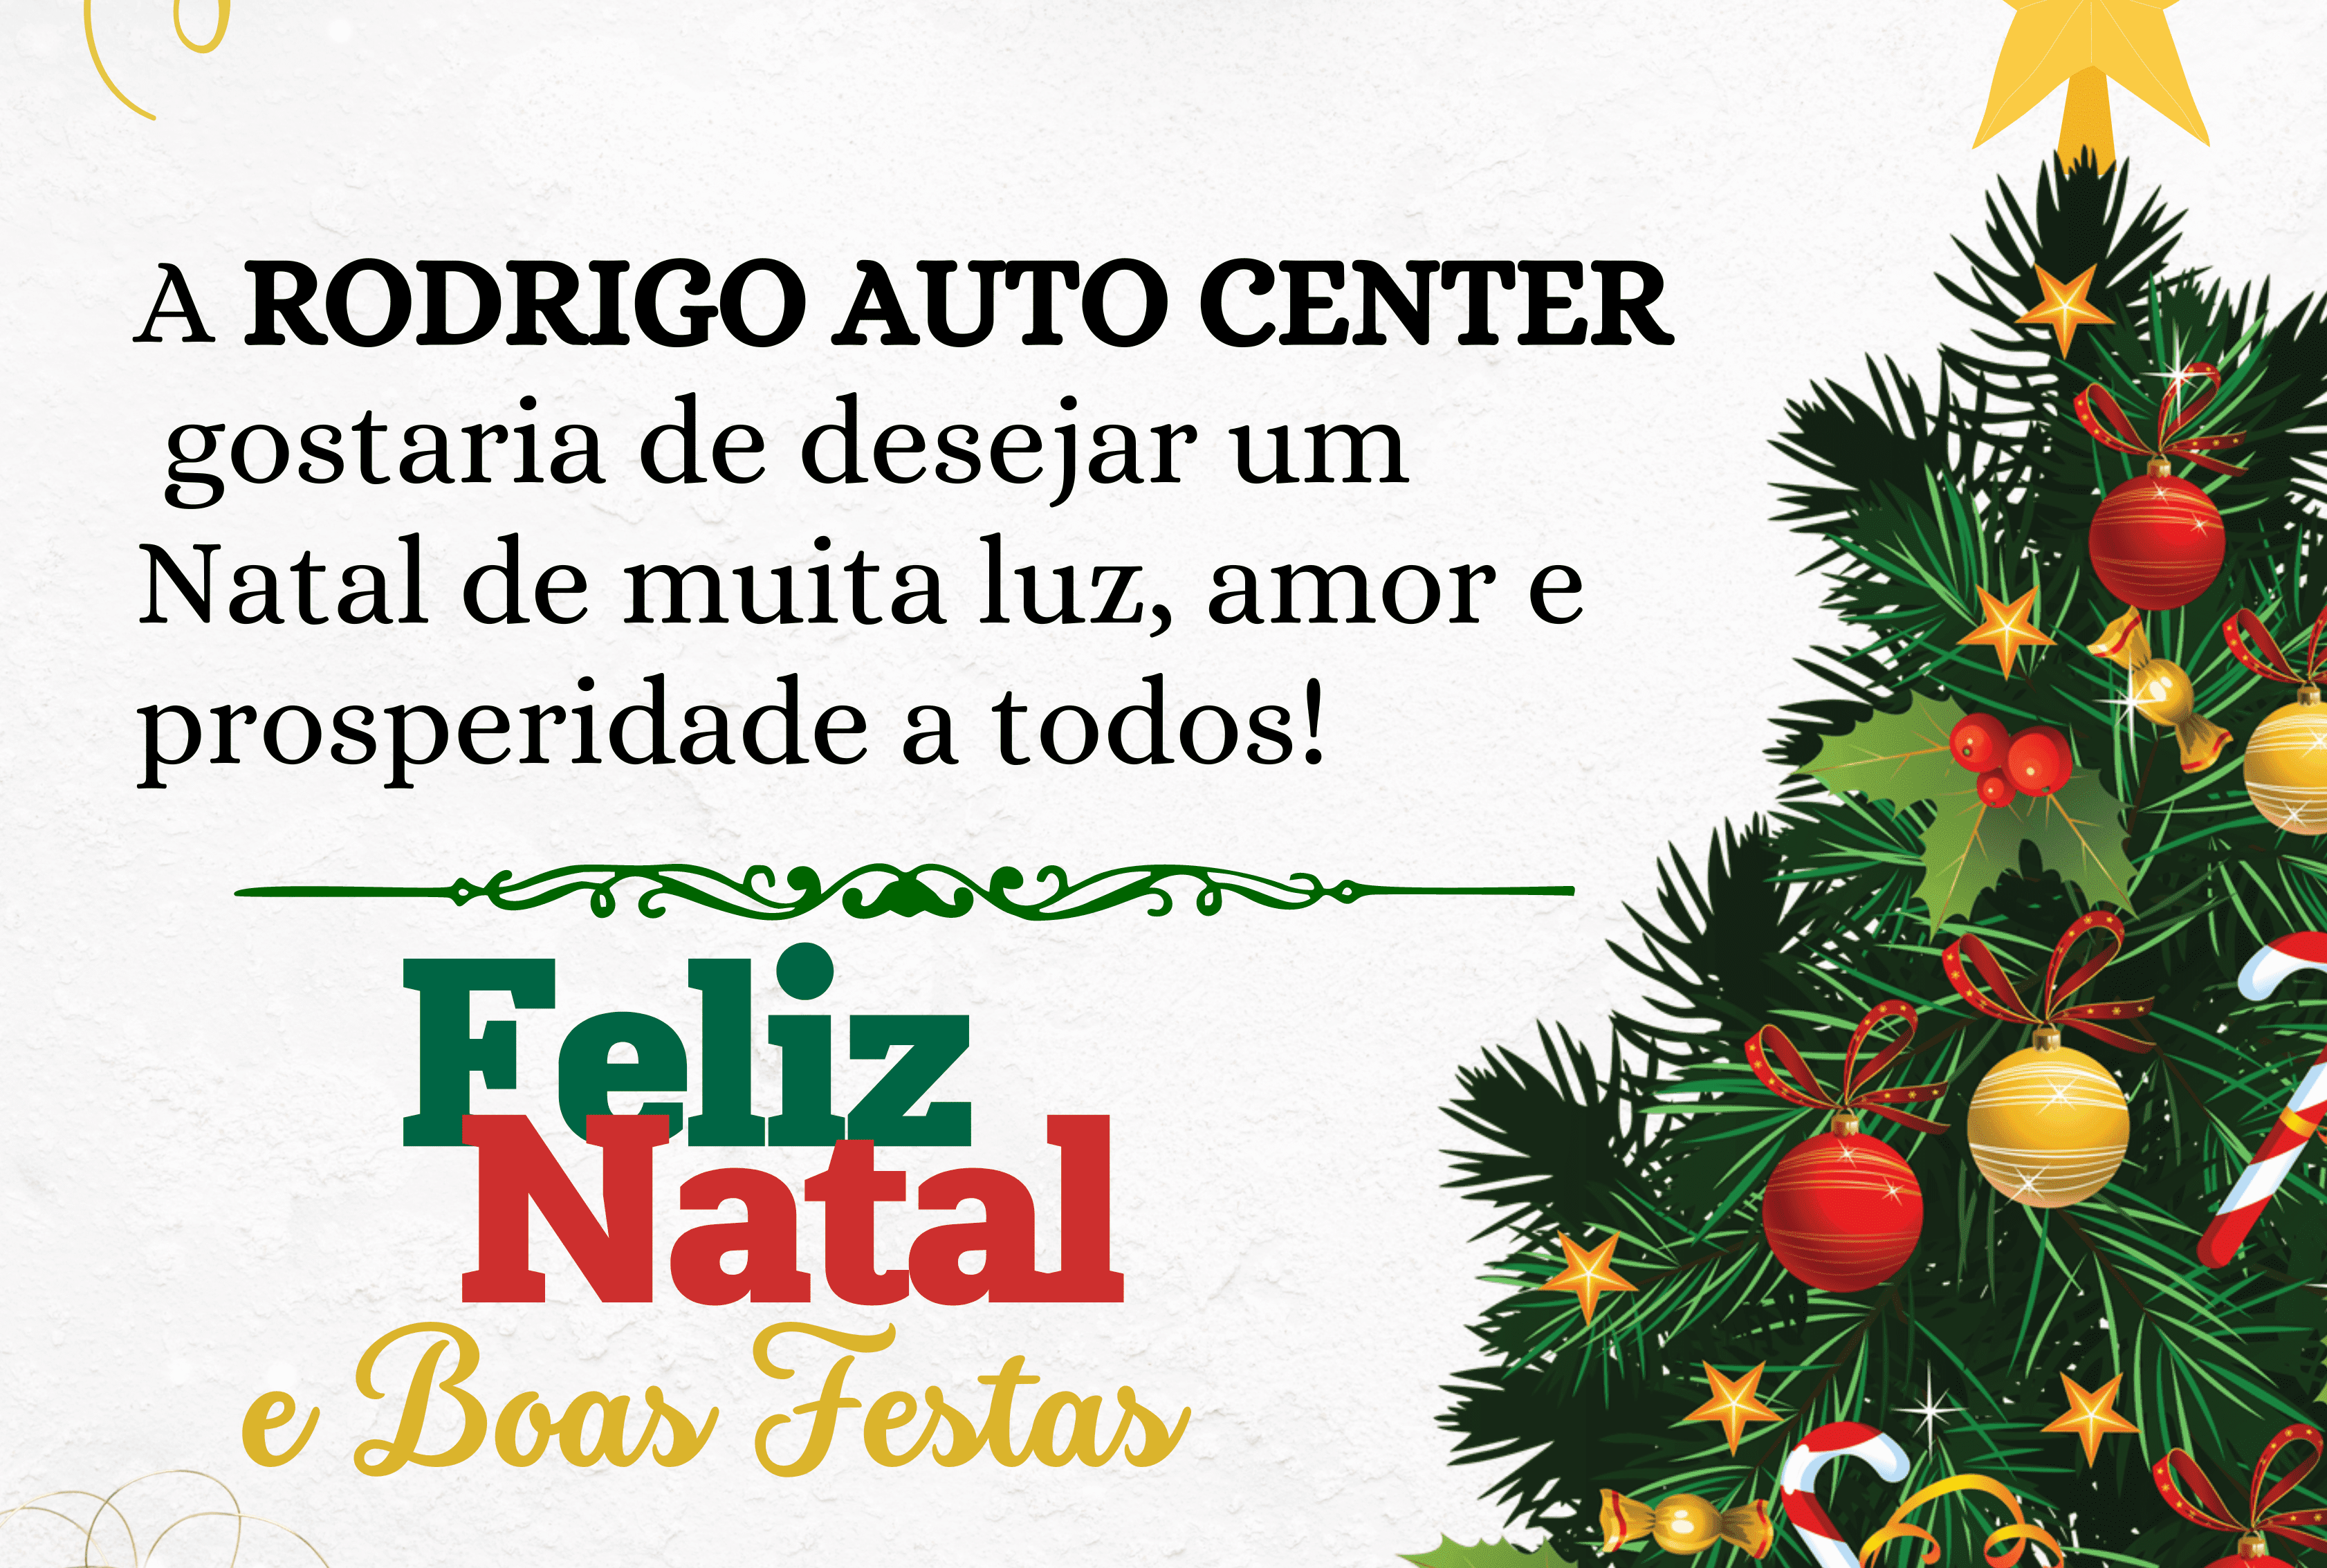 Rodrigo Auto Center deseja aos clientes e amigos um Feliz Natal – Portal  Daki